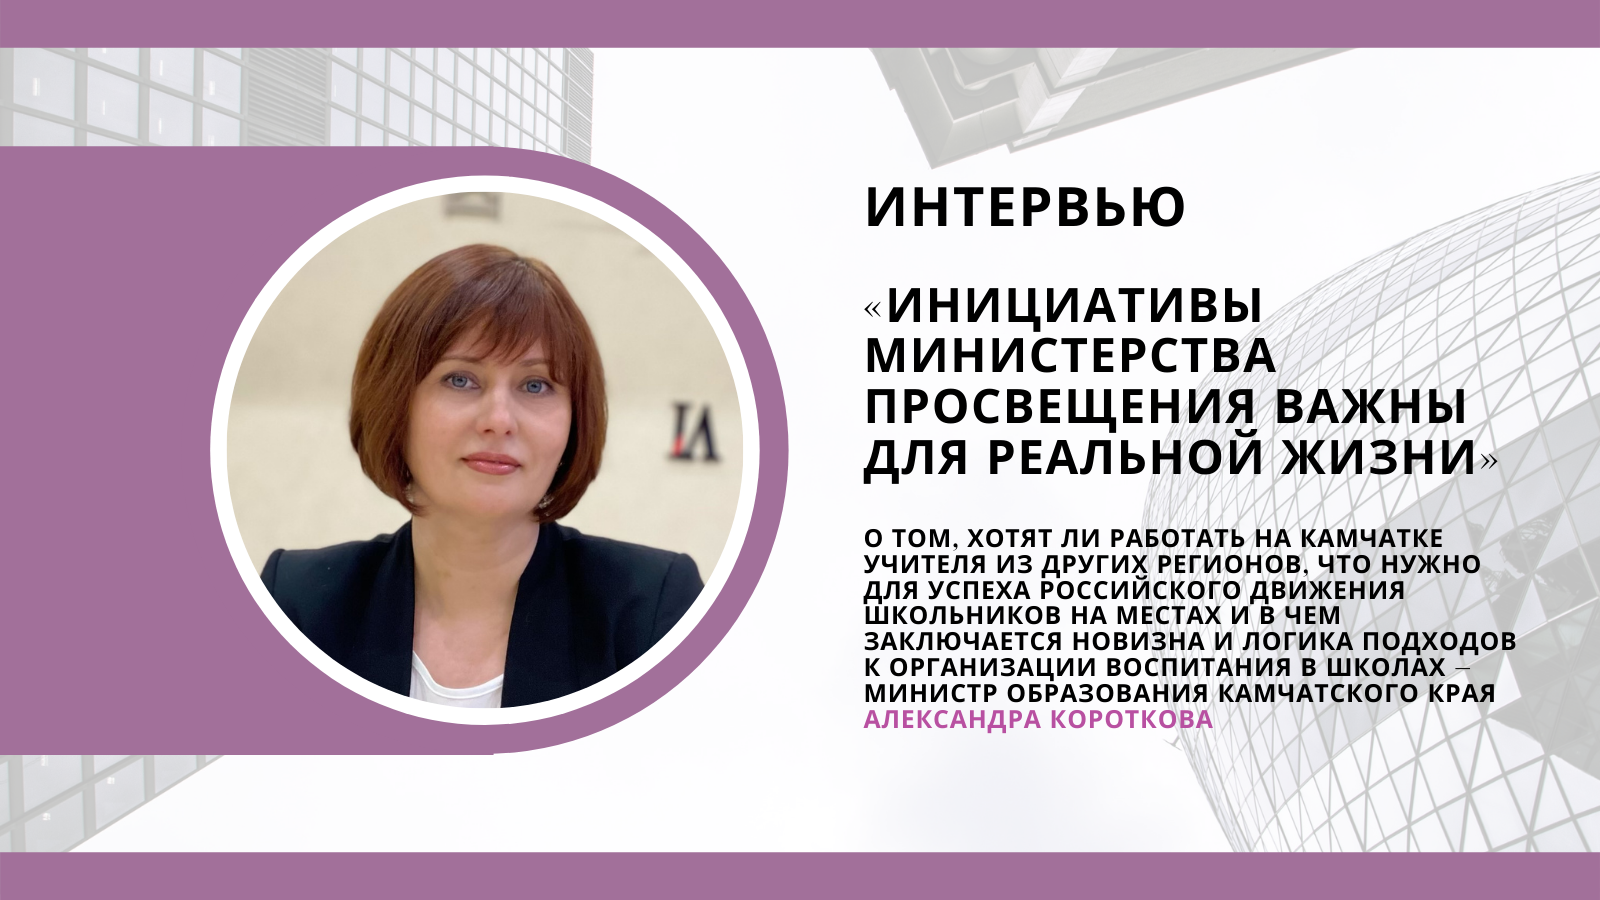 Александра Короткова: «Инициативы Министерства просвещения важны для реальной жизни»